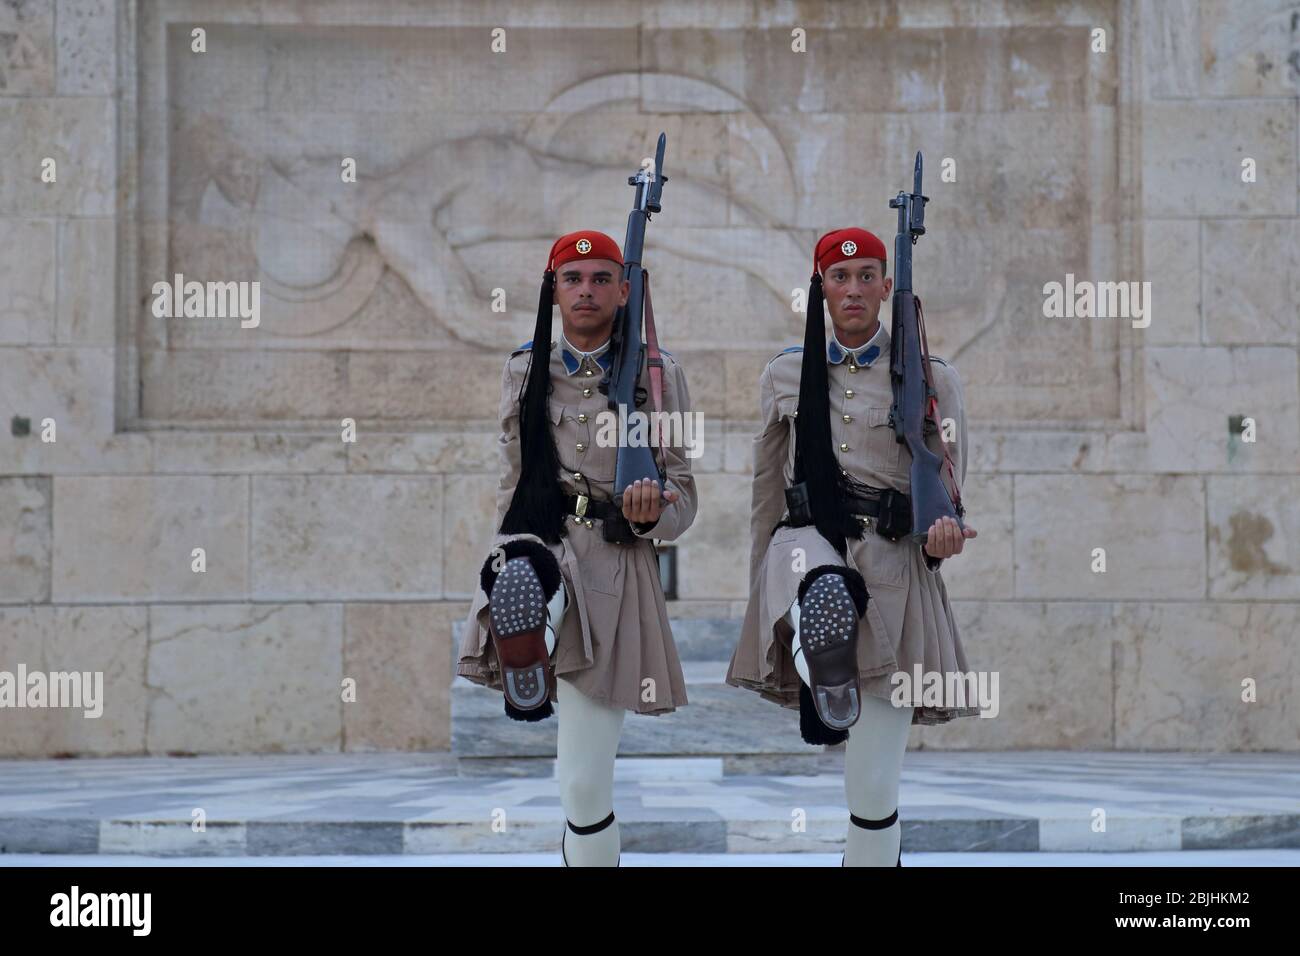 Atene, Grecia - 25 giugno 2016: Due soldati Evzone in uniformi cerimoniali marciano davanti alla Tomba del Milite Ignoto in Piazza Syntagma. Foto Stock